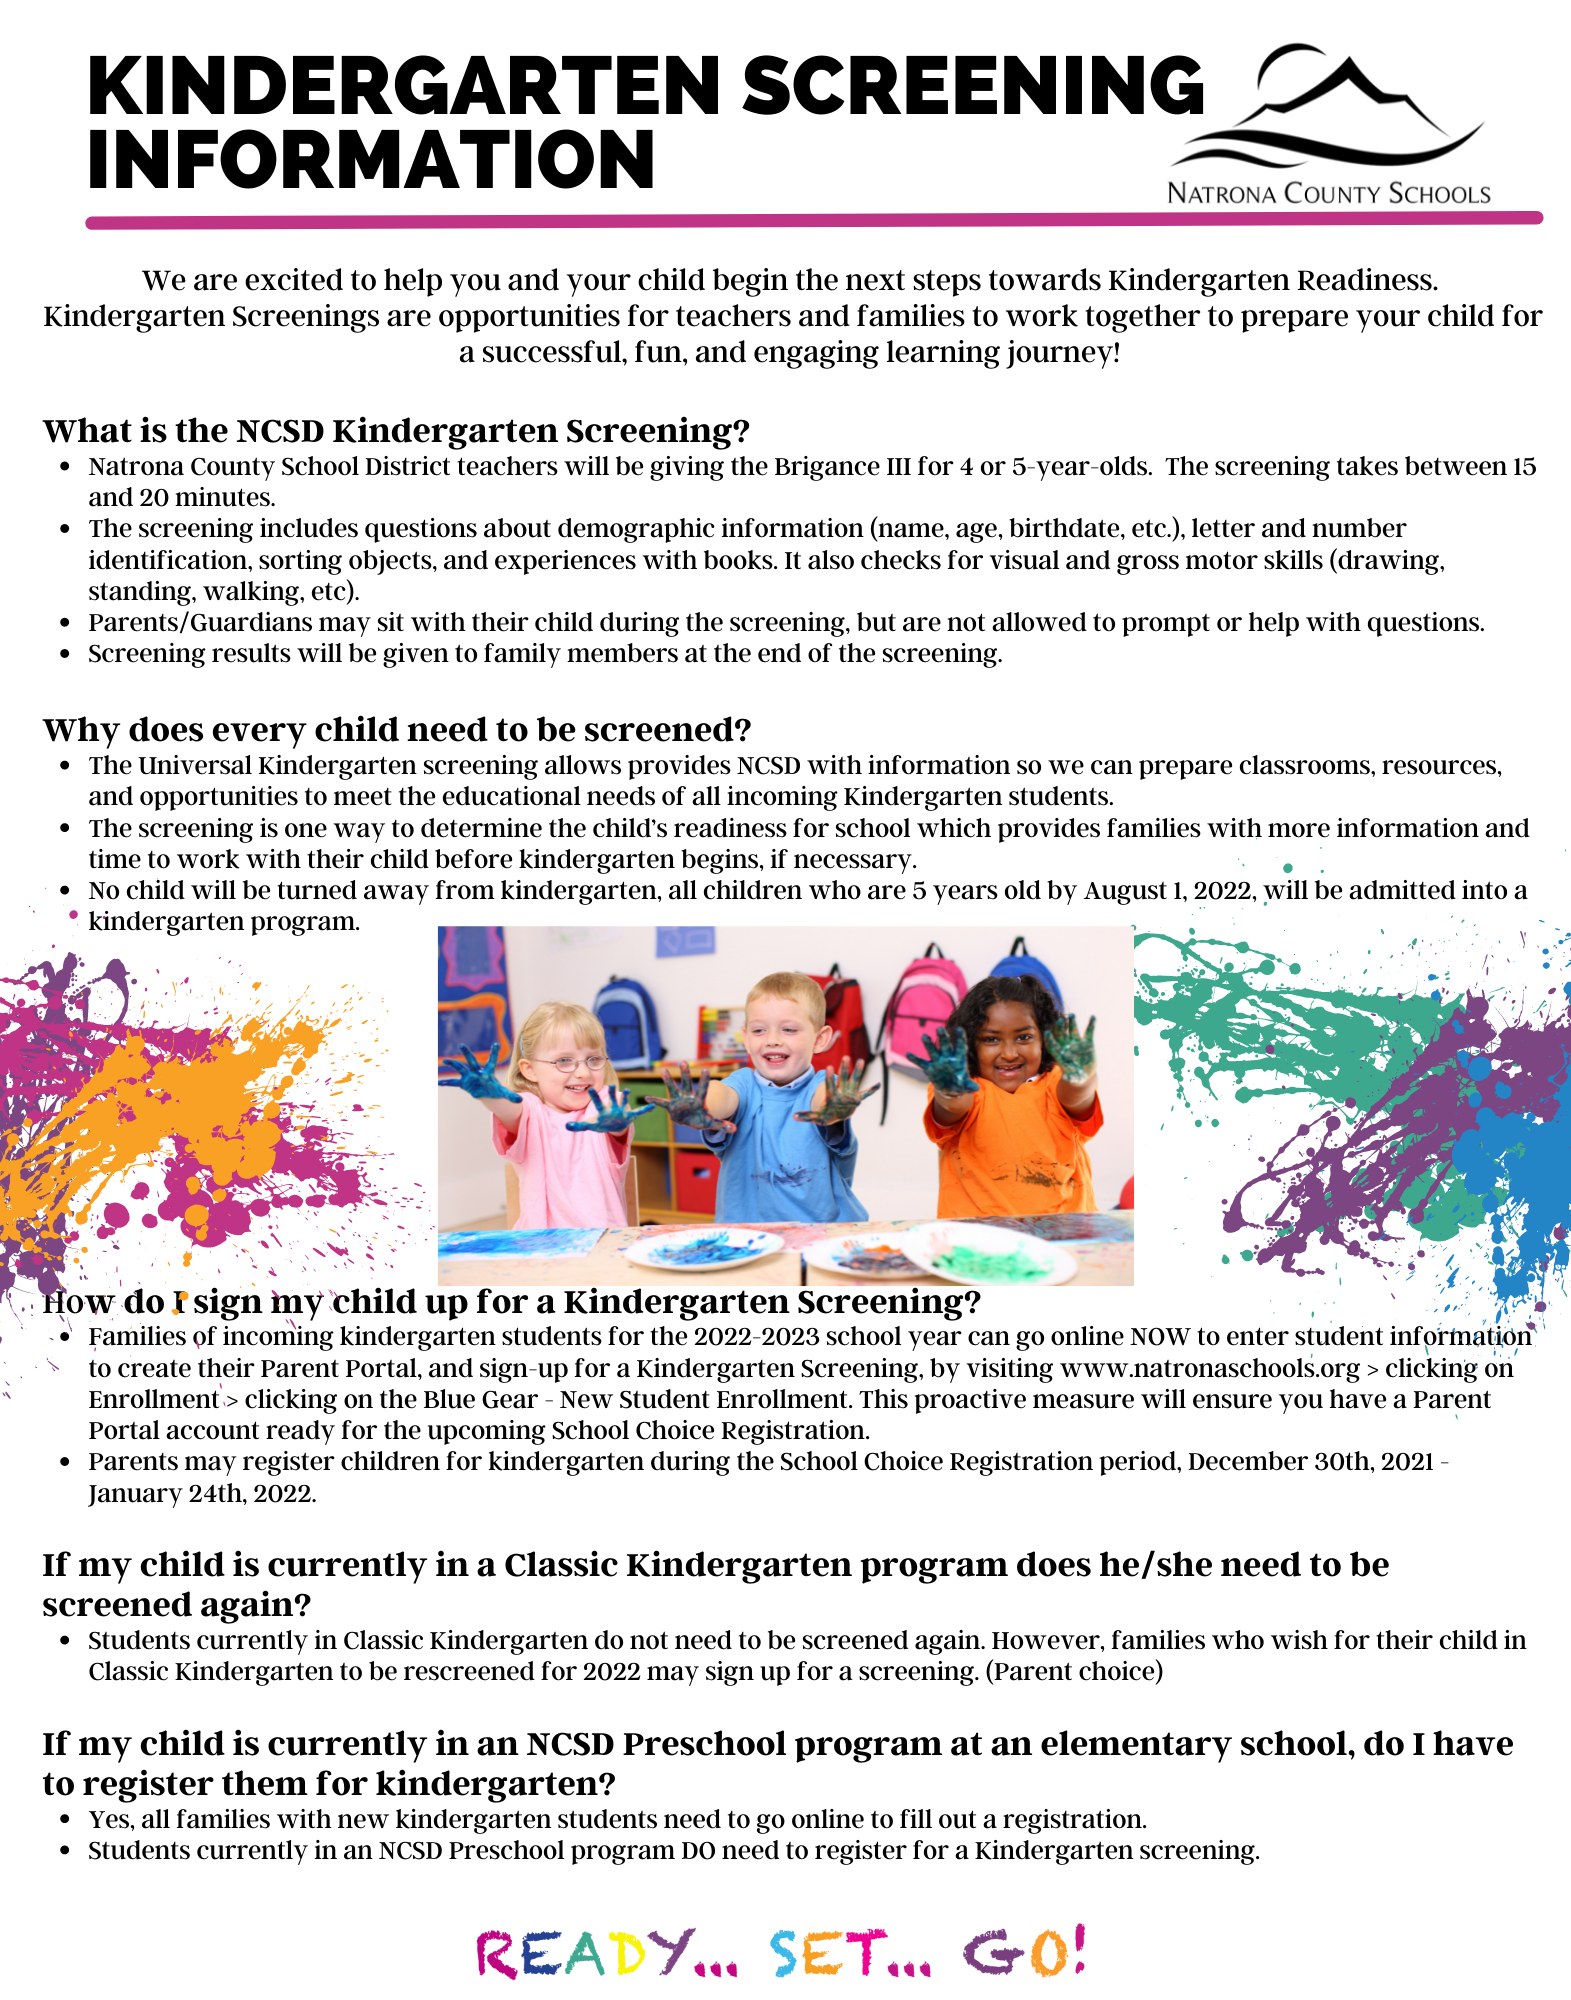 Kindergarten Screening Resources flyer